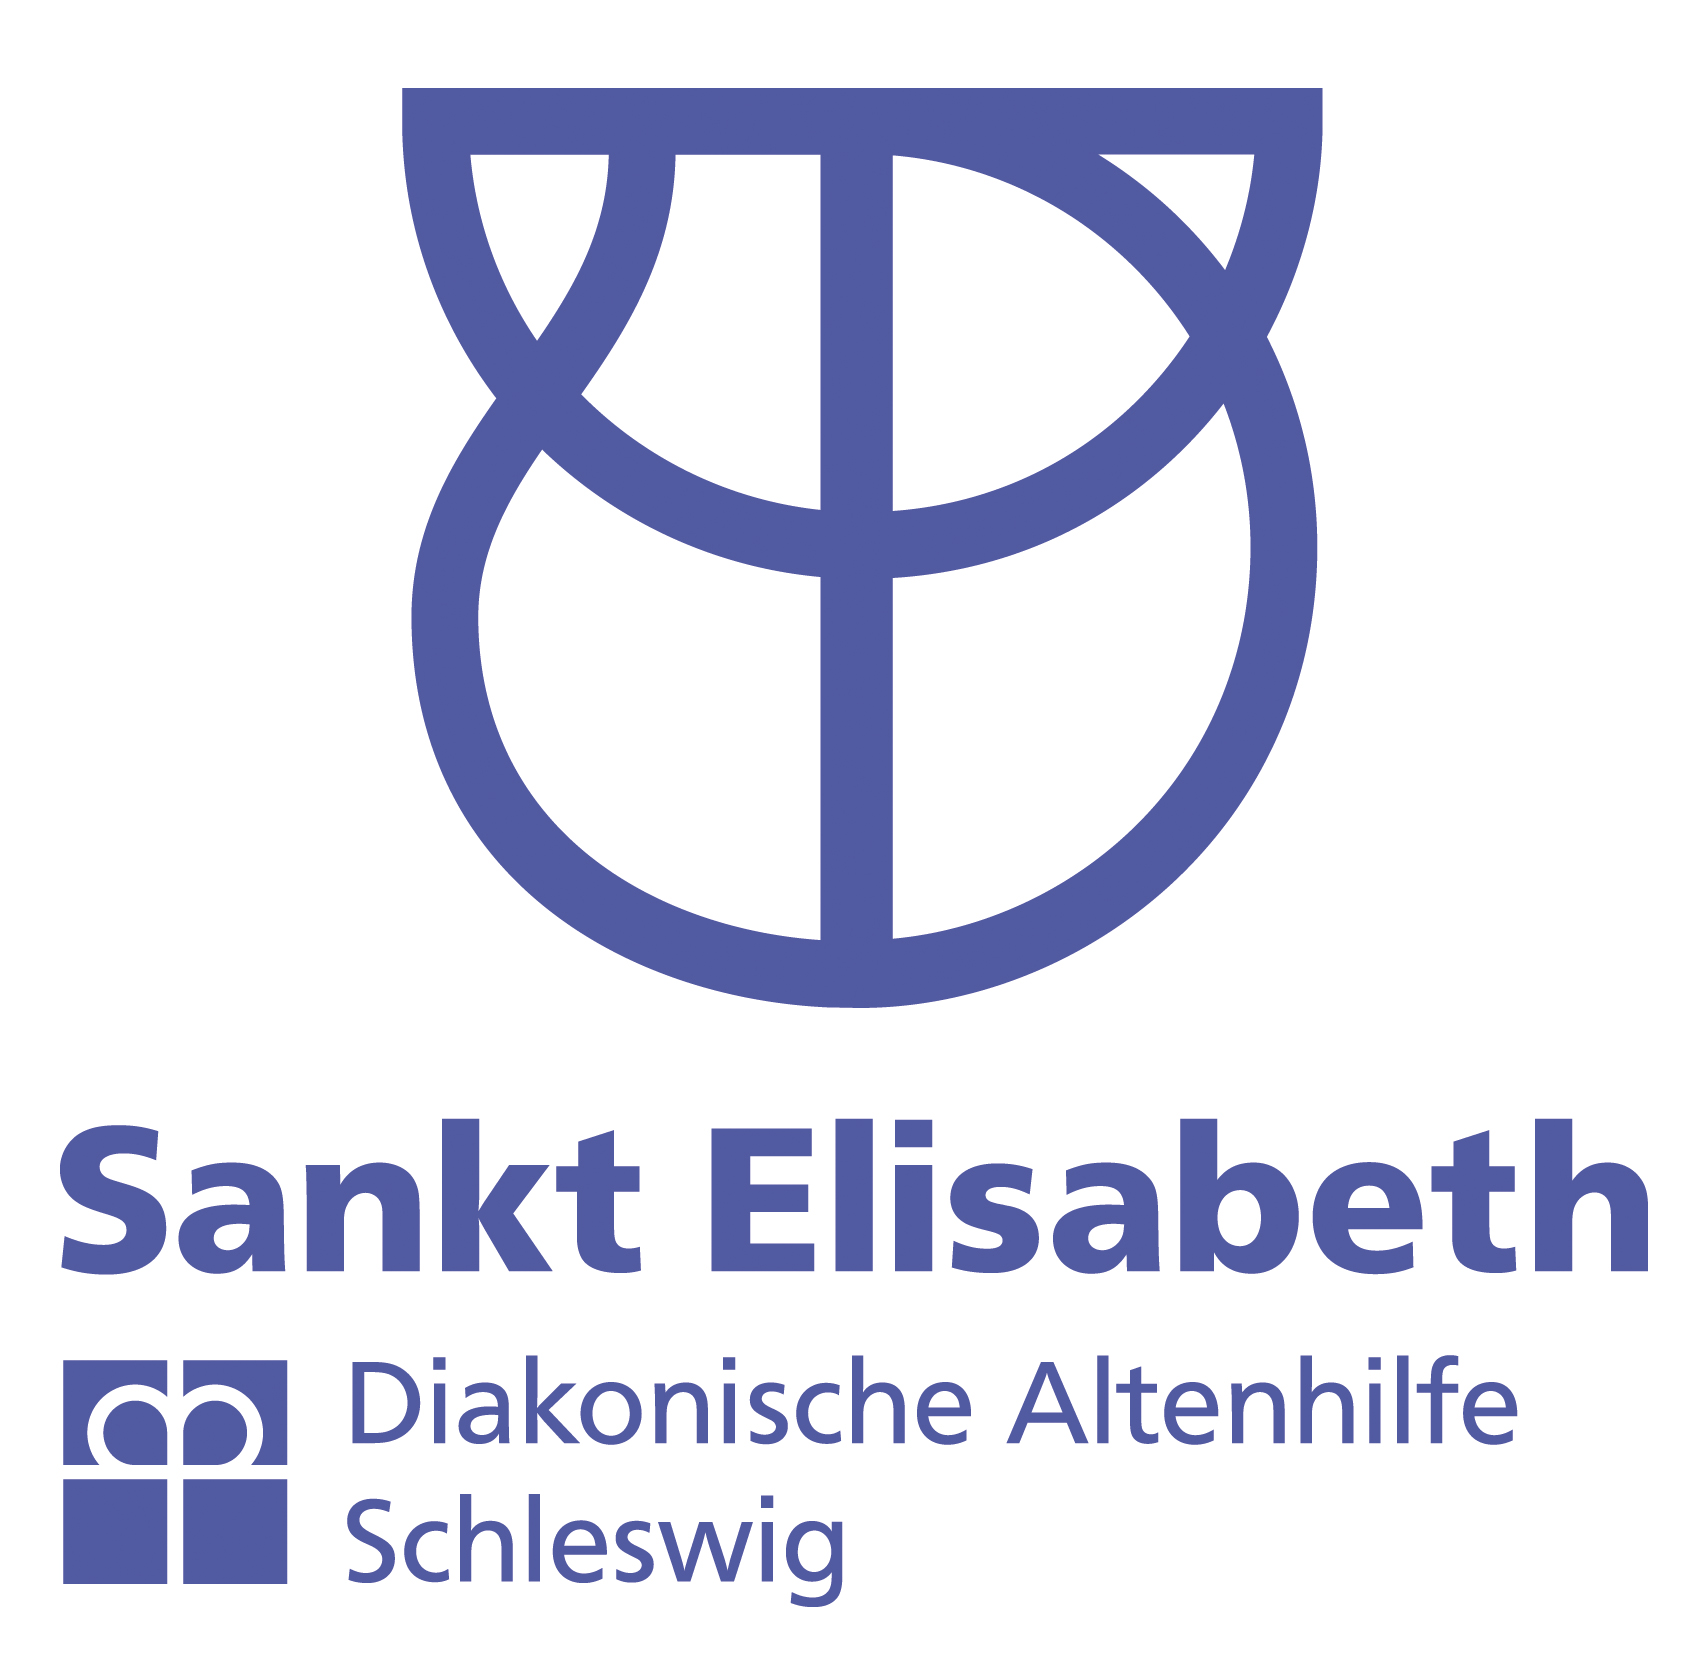 St. Elisabeth gGmbH; Seniorenheim zum Öhr